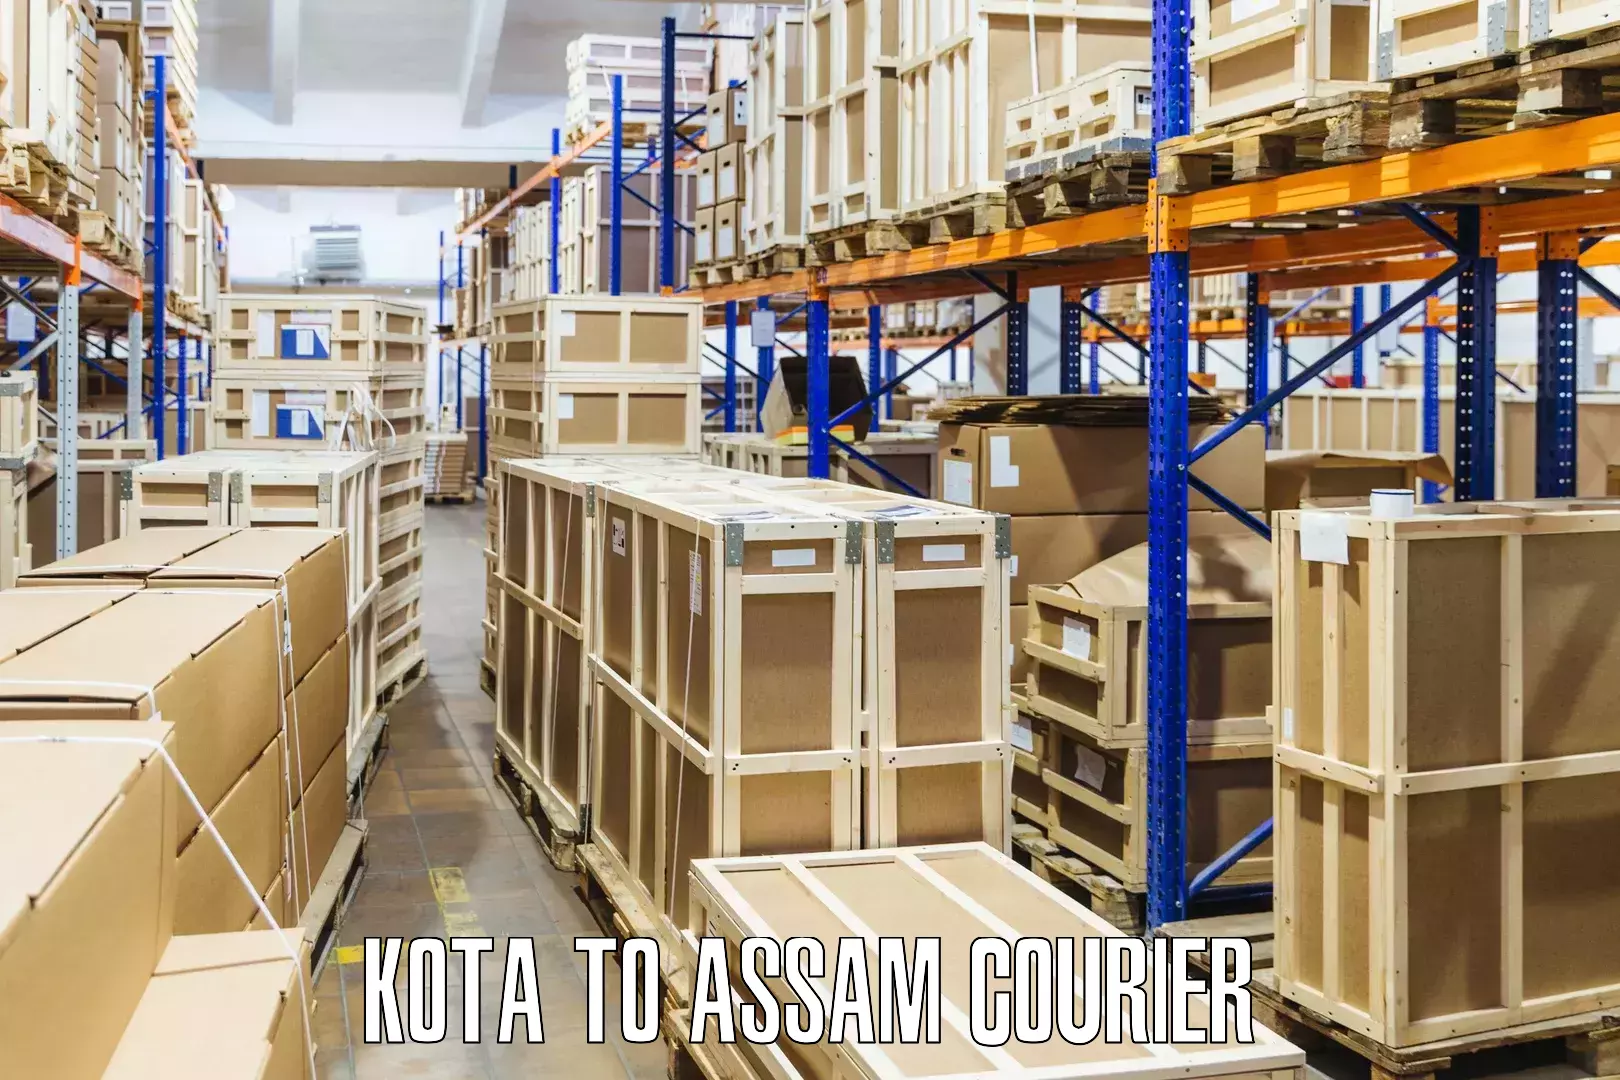 Express courier facilities Kota to Karbi Anglong